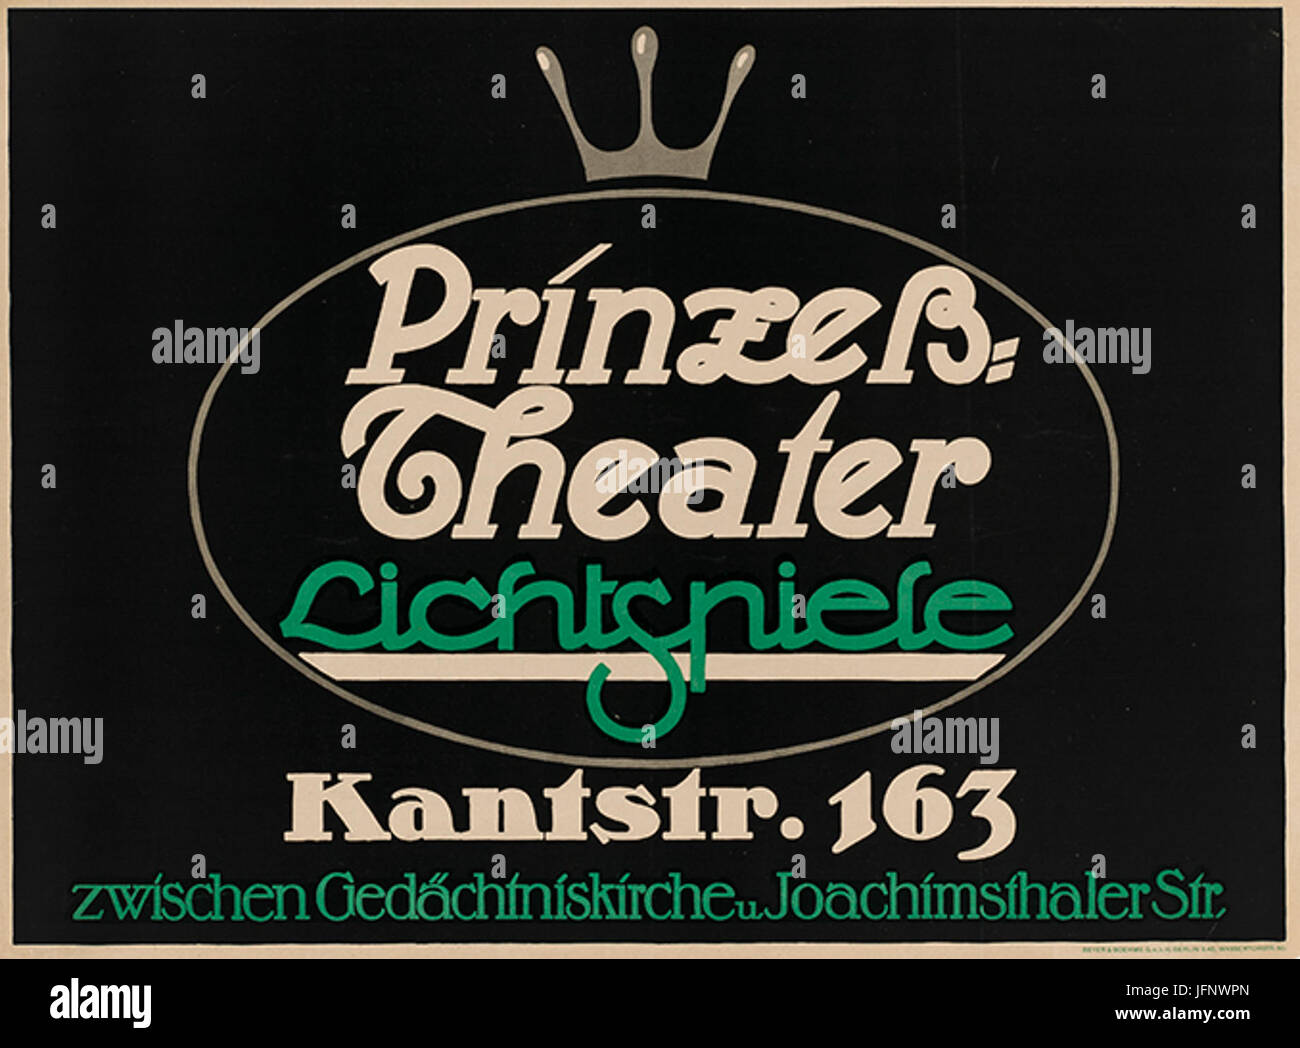 1911 circa anonymer Künstler Plakat Prinzeß-Theater Lichtspiele Kantstraße 163 in Berlin Druckerei Beyer 26 Boehme Stock Photo